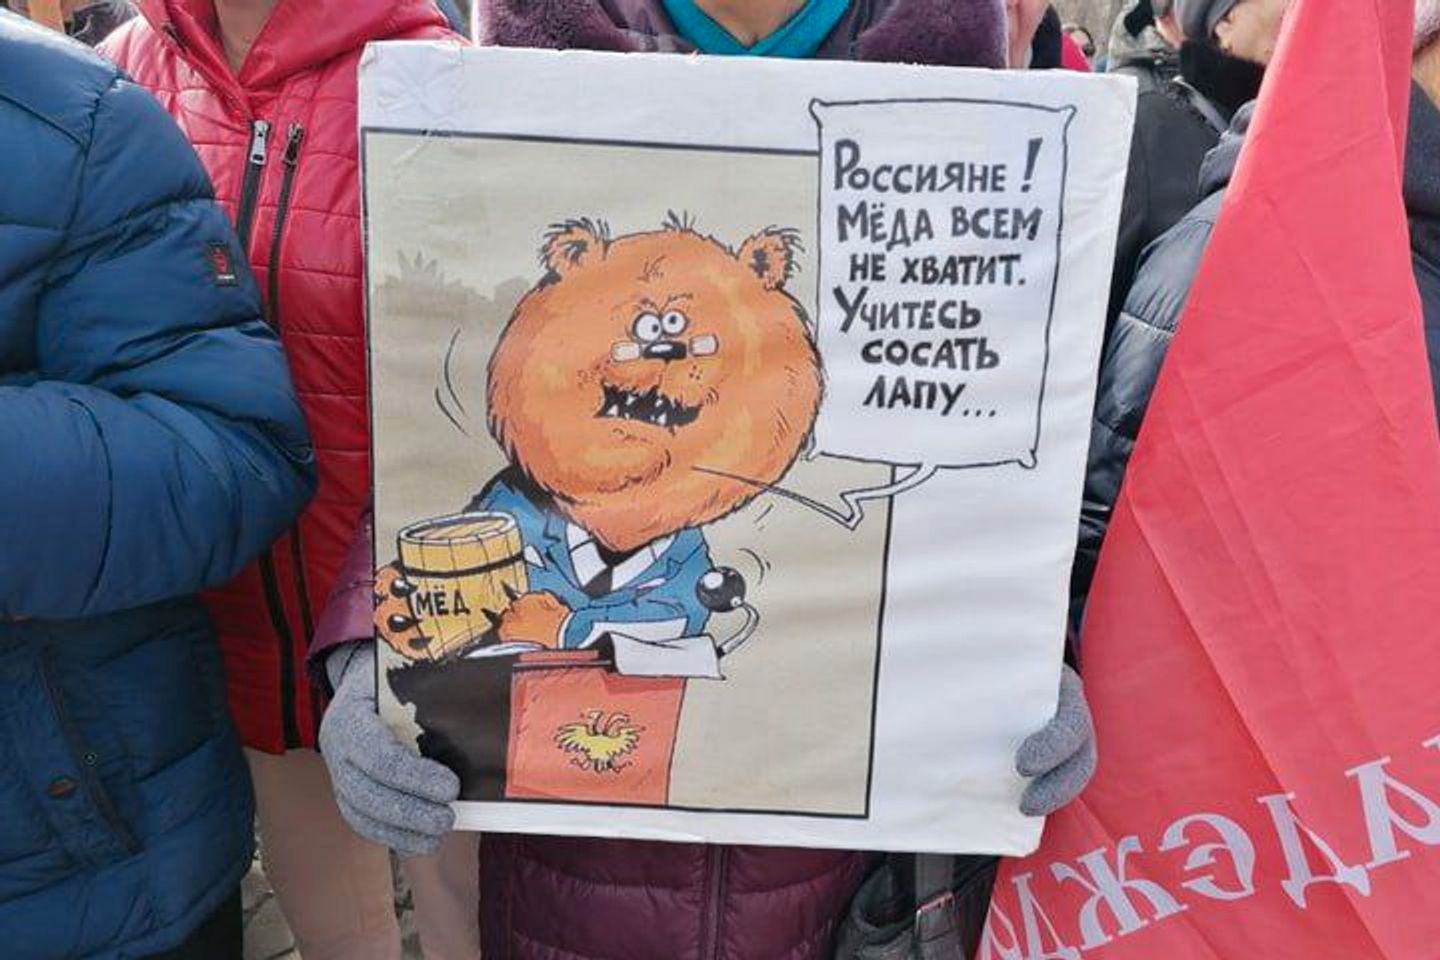 В Бийске прошел митинг против повышения тарифов ЖКХ. Его организовала КПРФ